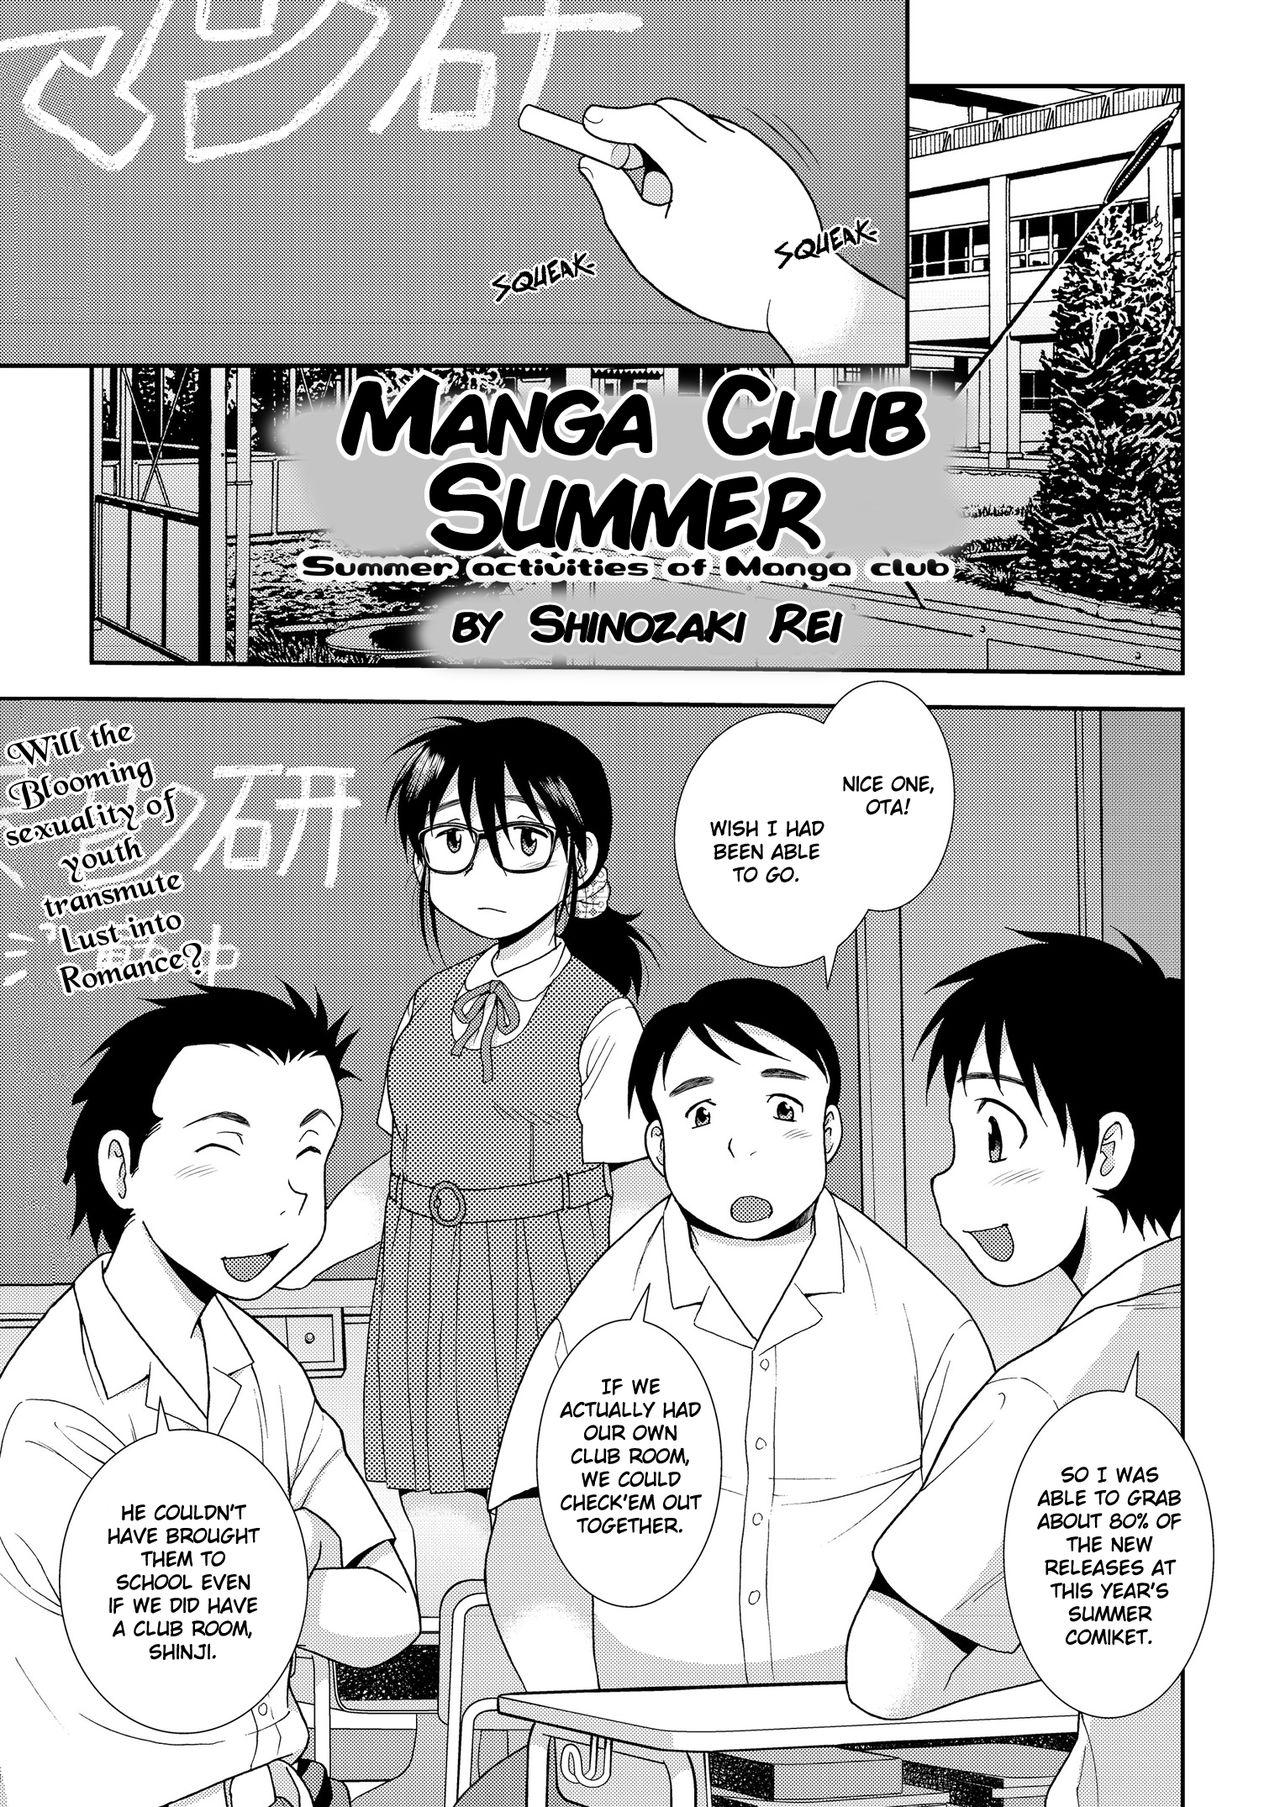 Mangaken no Natsu | Manga Club Summer 0